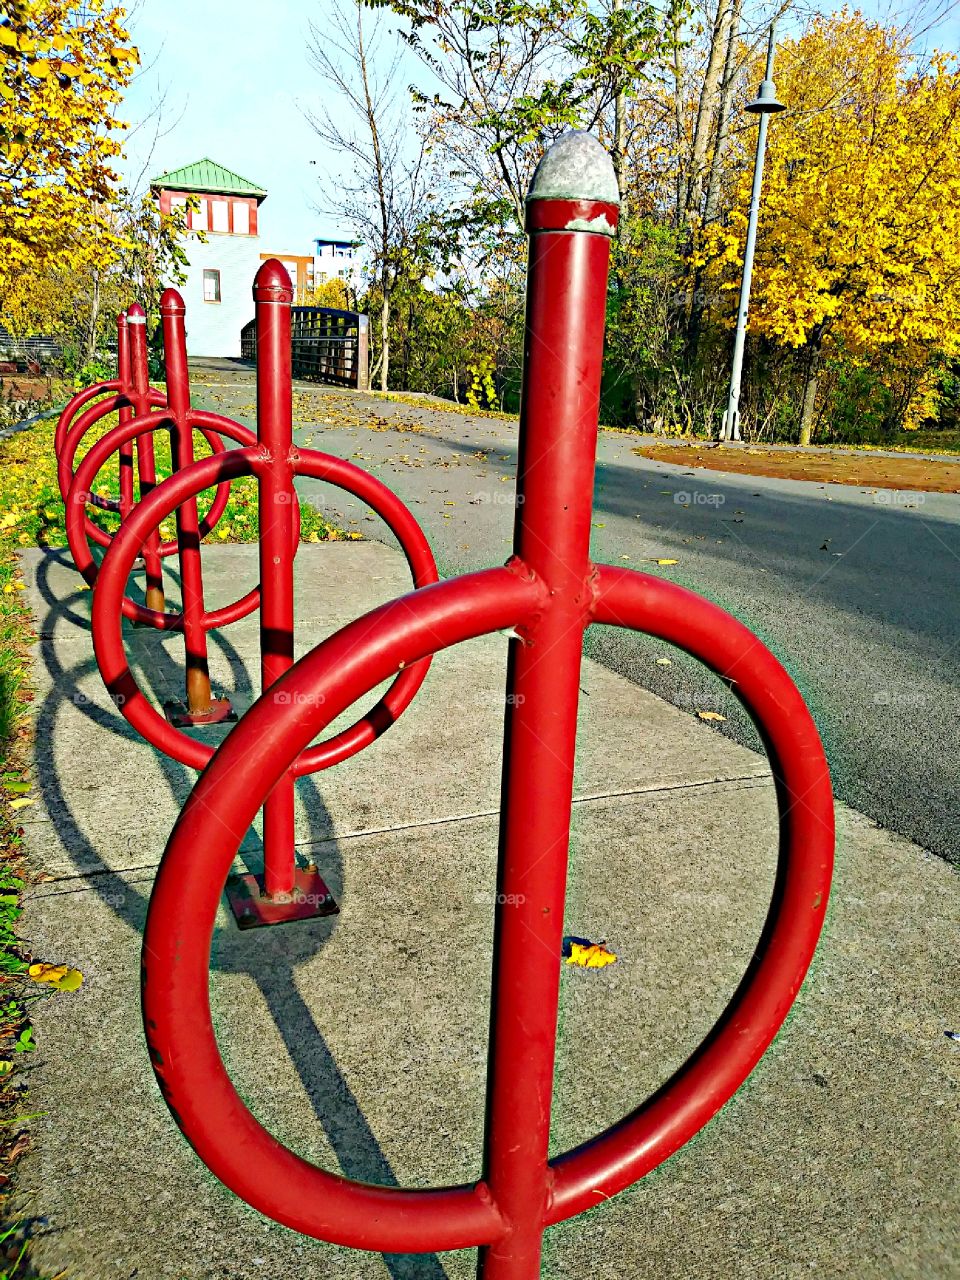 Bike racks at the park